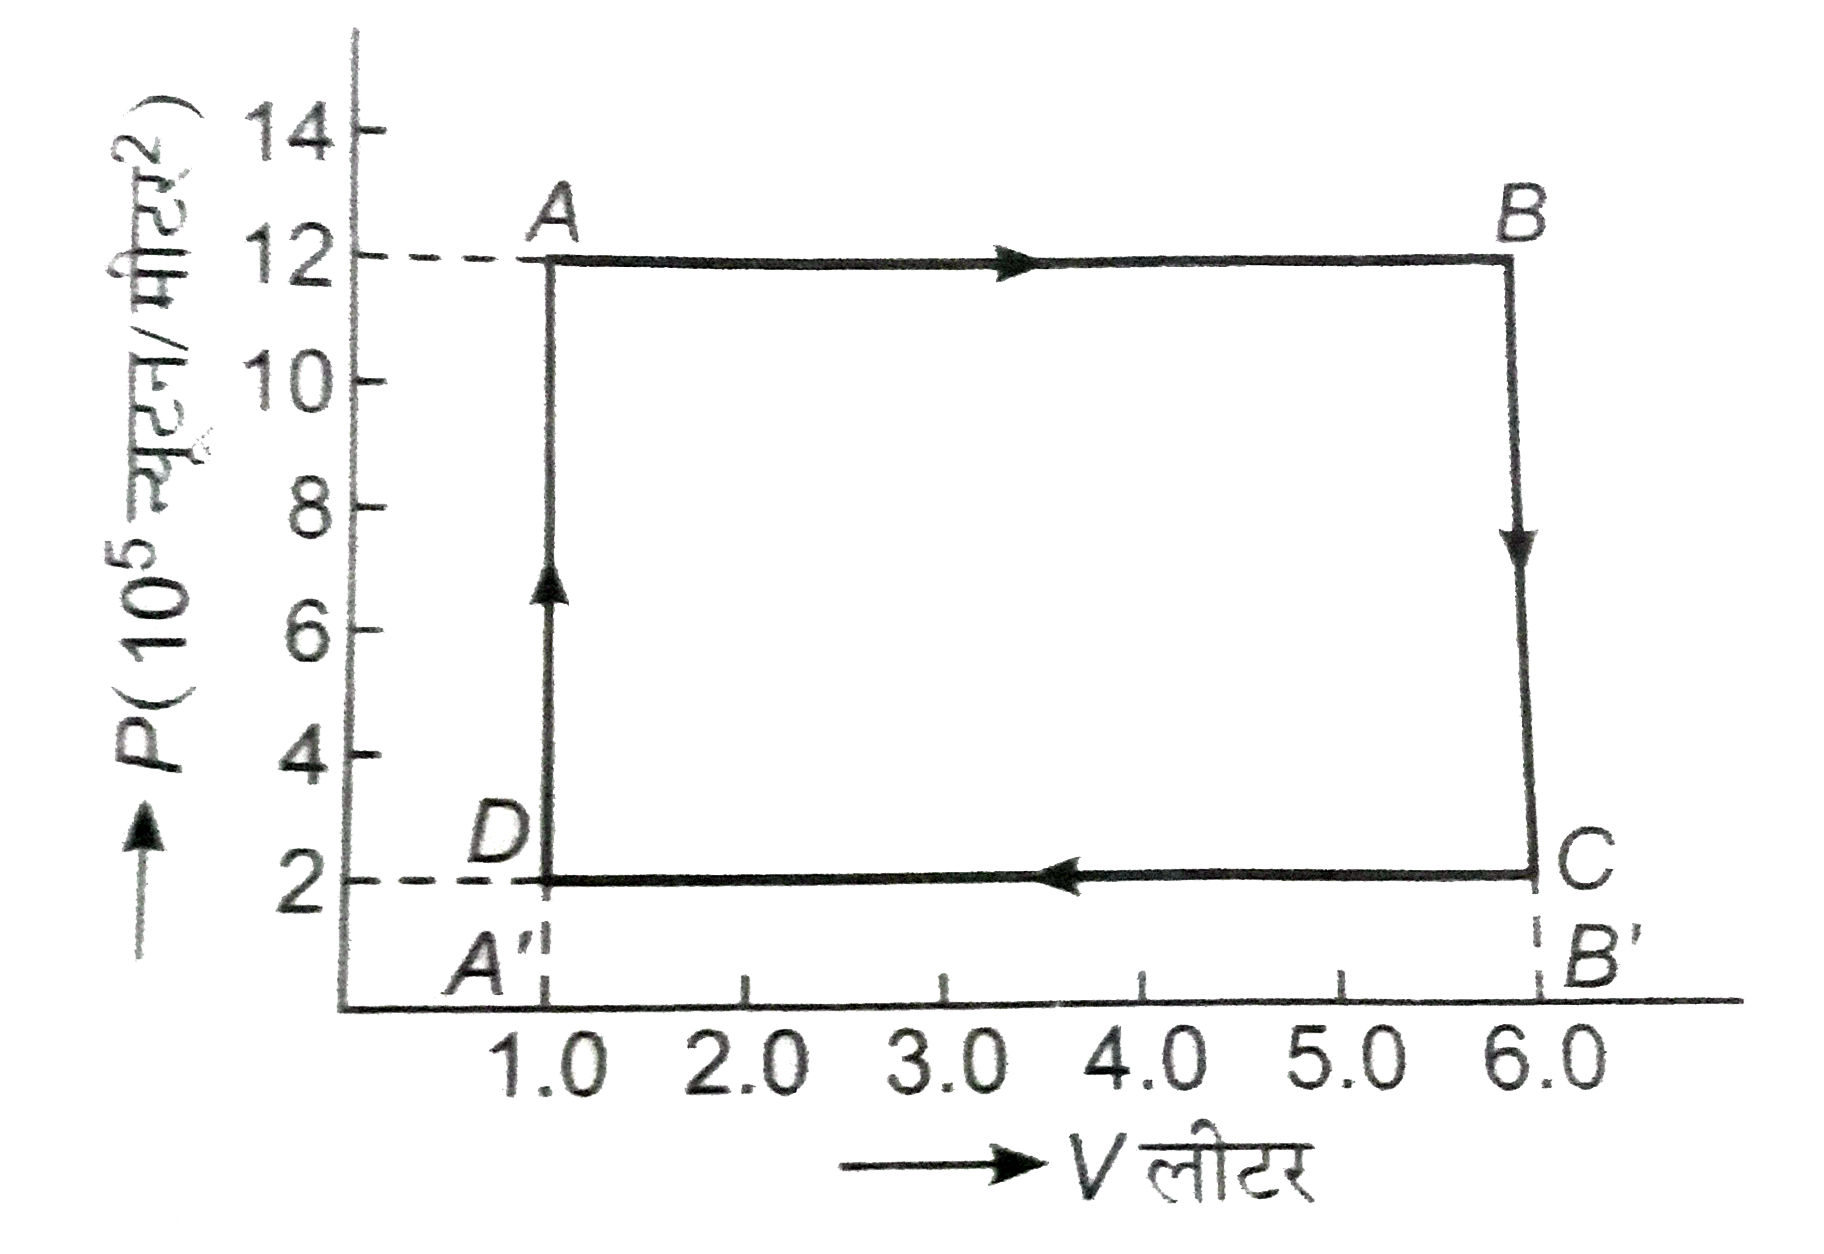 संलग्न चित्र में, एक आदर्श गैस की ऊष्मागतिकीय प्रक्रियाओं का P-V। ग्राफ प्रदर्शित है। इस ग्राफ से ज्ञात कीजियें-   सम्पूर्ण चक्त ABCDA में किया गया कार्य।